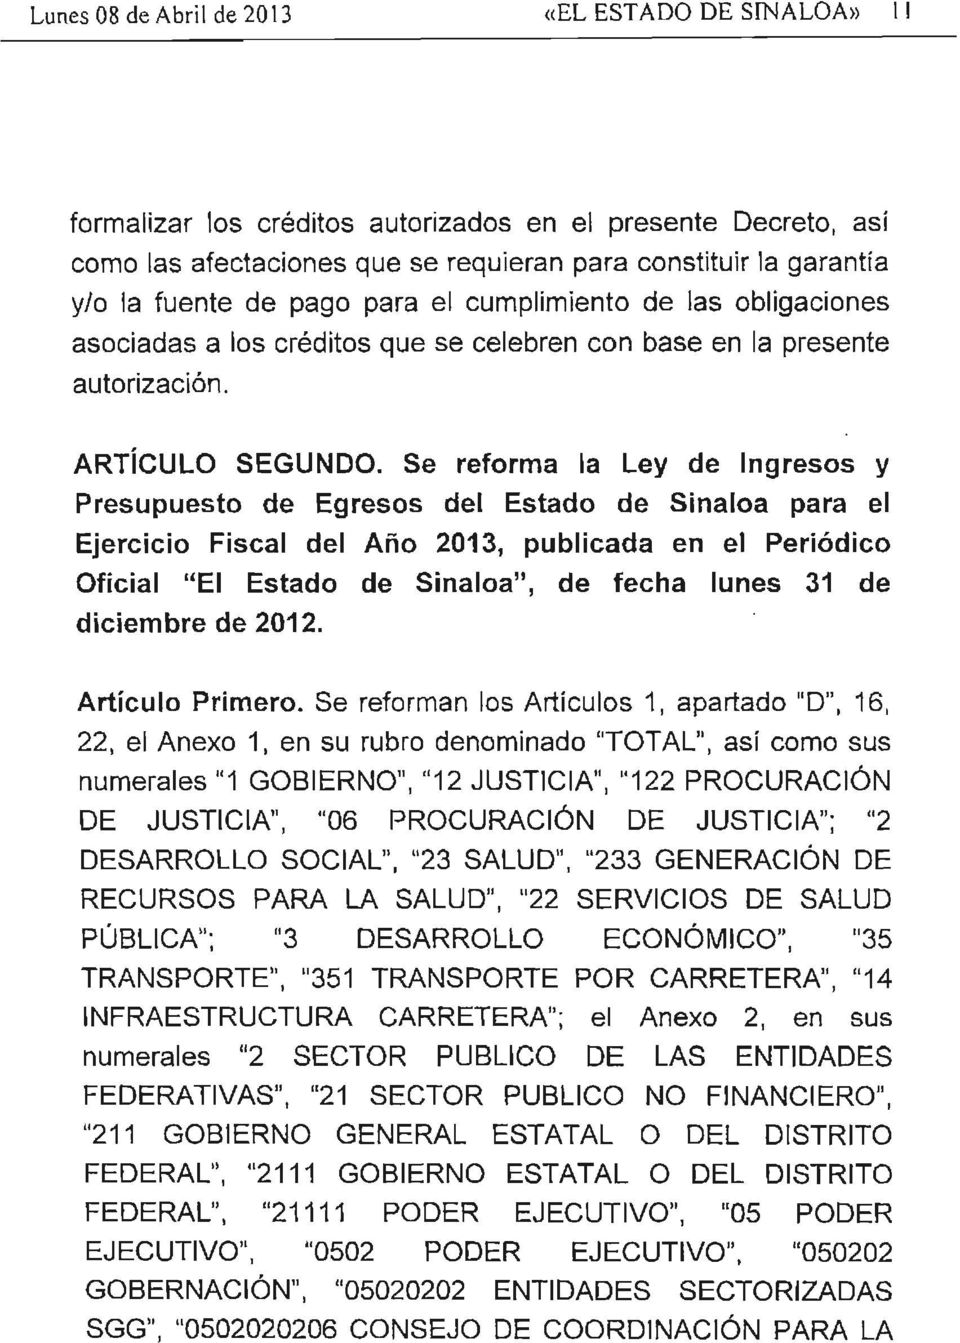 Se reforma la ley de Ingresos y Presupuesto de Egresos del Estado de Sinaloa para el Ejercicio Fiscal del Año 2013, publicada en el Periódico Oficial "El Estado de Sinaloa", de fecha lunes 31 de